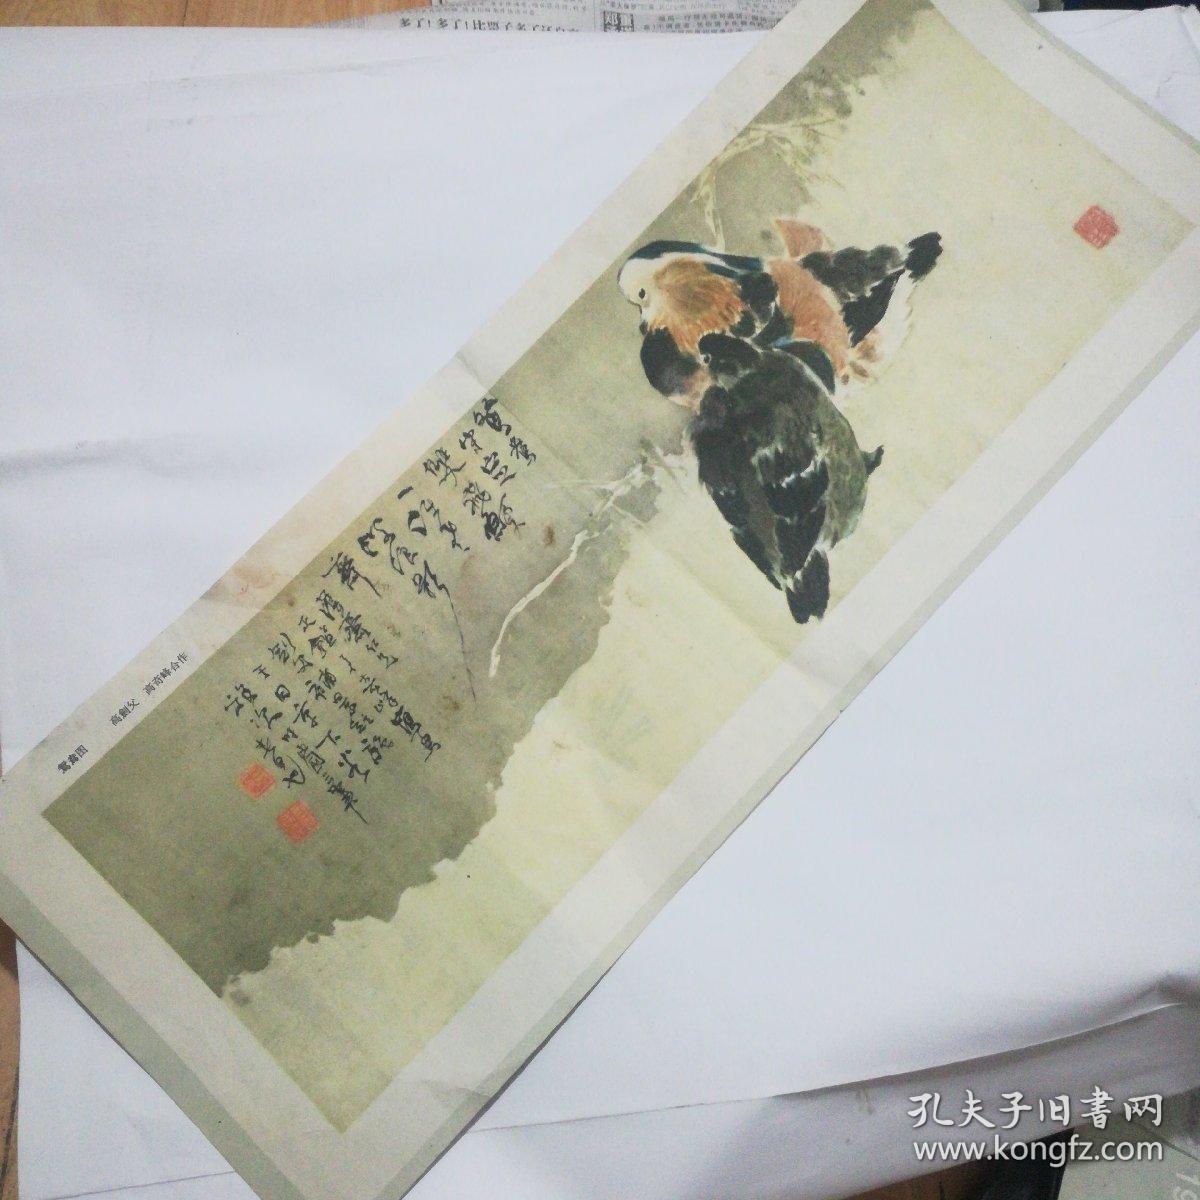 画报插页剪切版收藏:高剑父高奇峰合作的绘画作品《鸳鸯图》